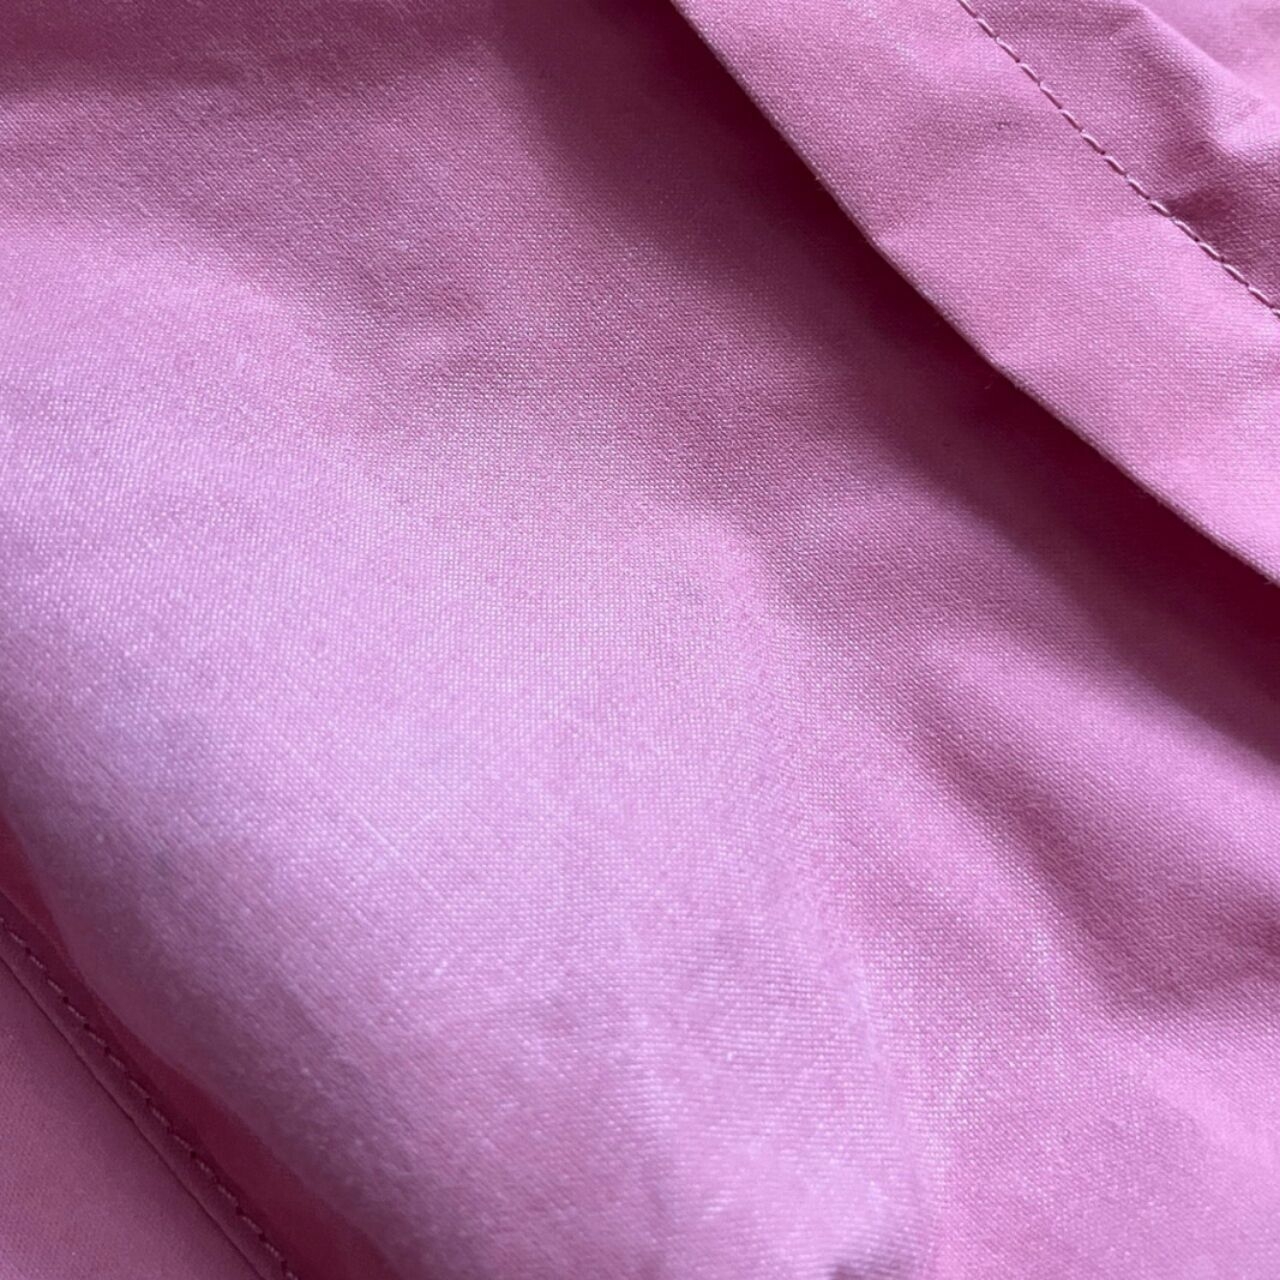 Fjallraven Kanken Pink Backpack